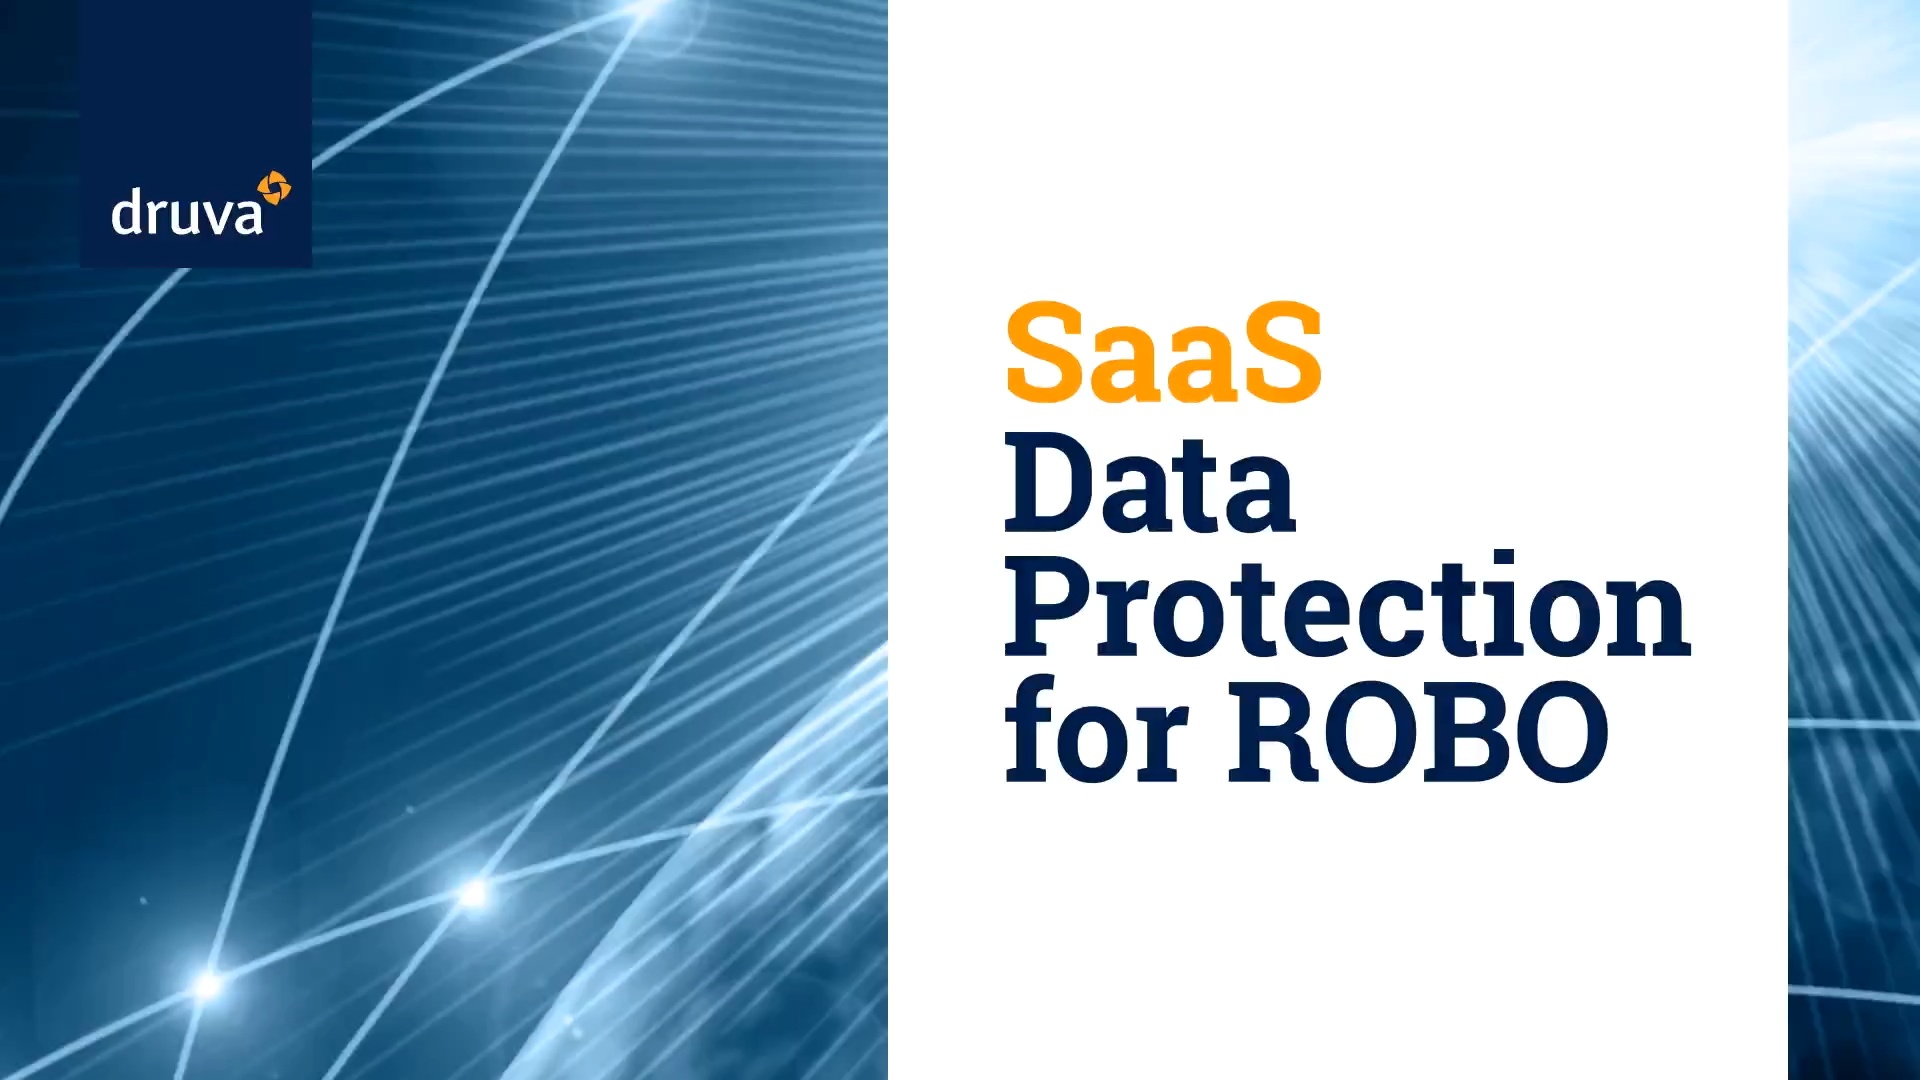 SaaS data protection for ROBO